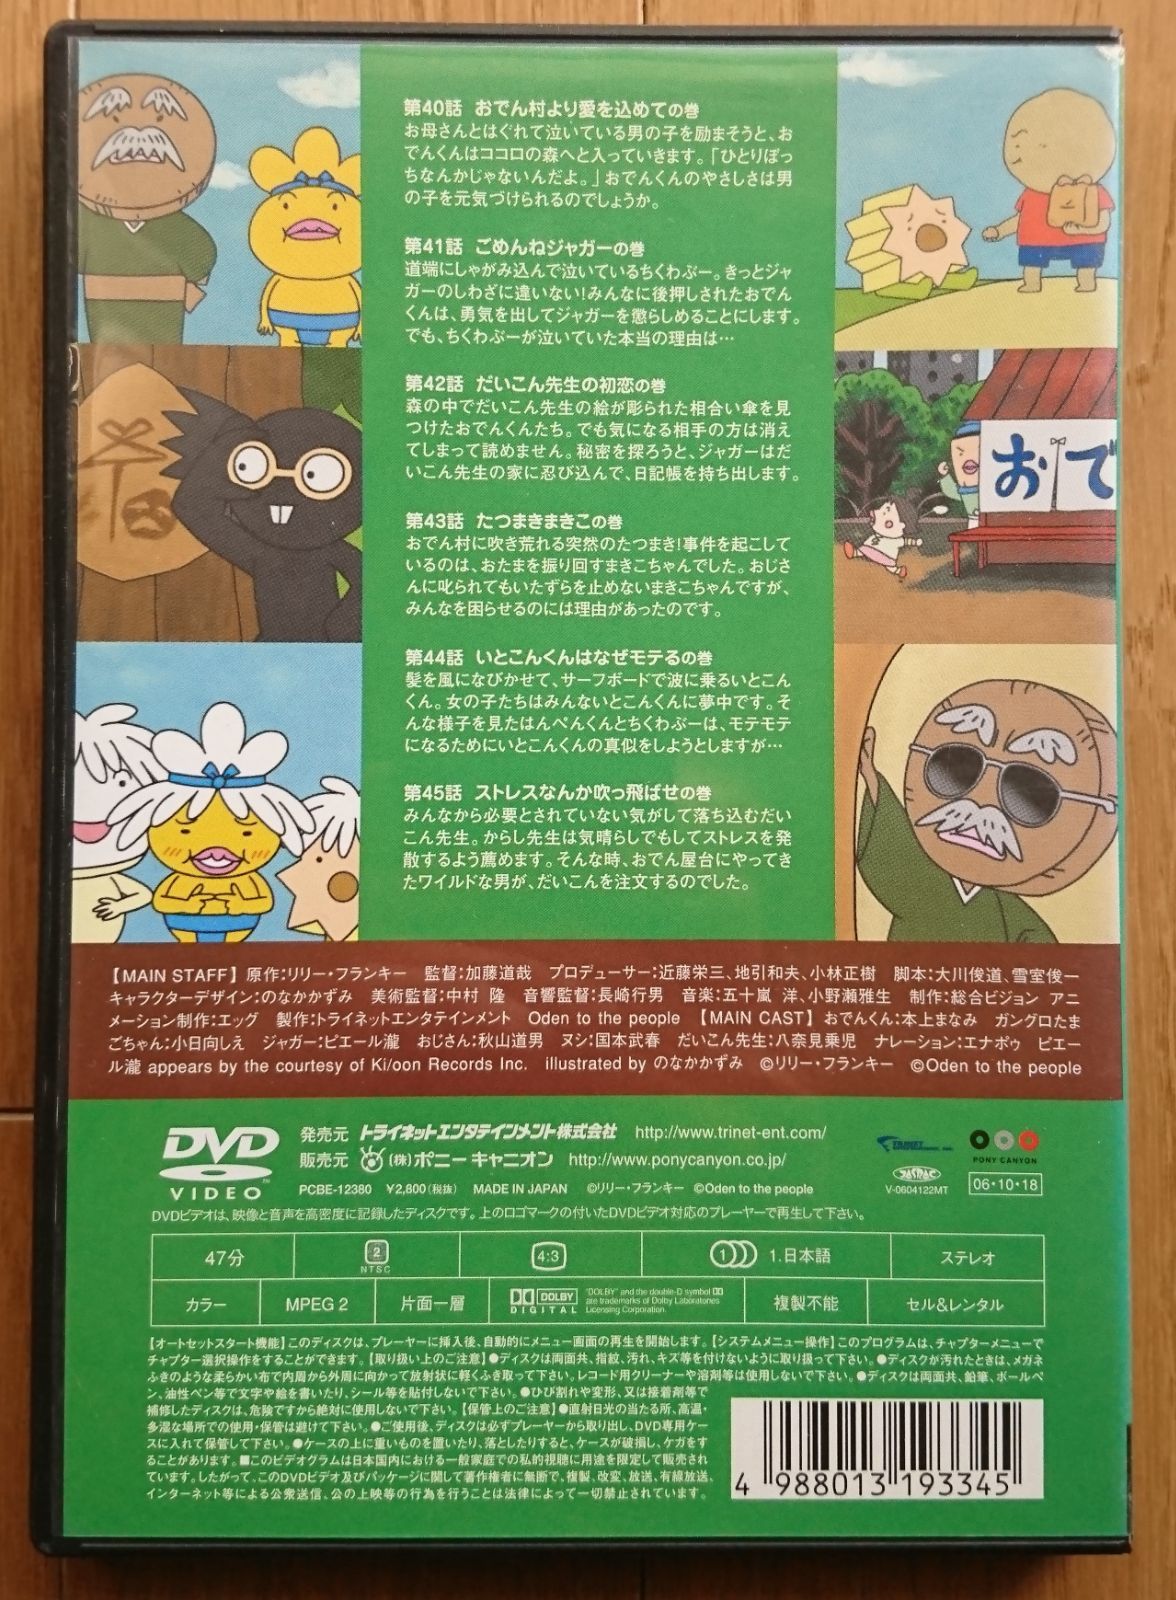 【レンタル版DVD】おでんくん 07 原作:リリー・フランキー